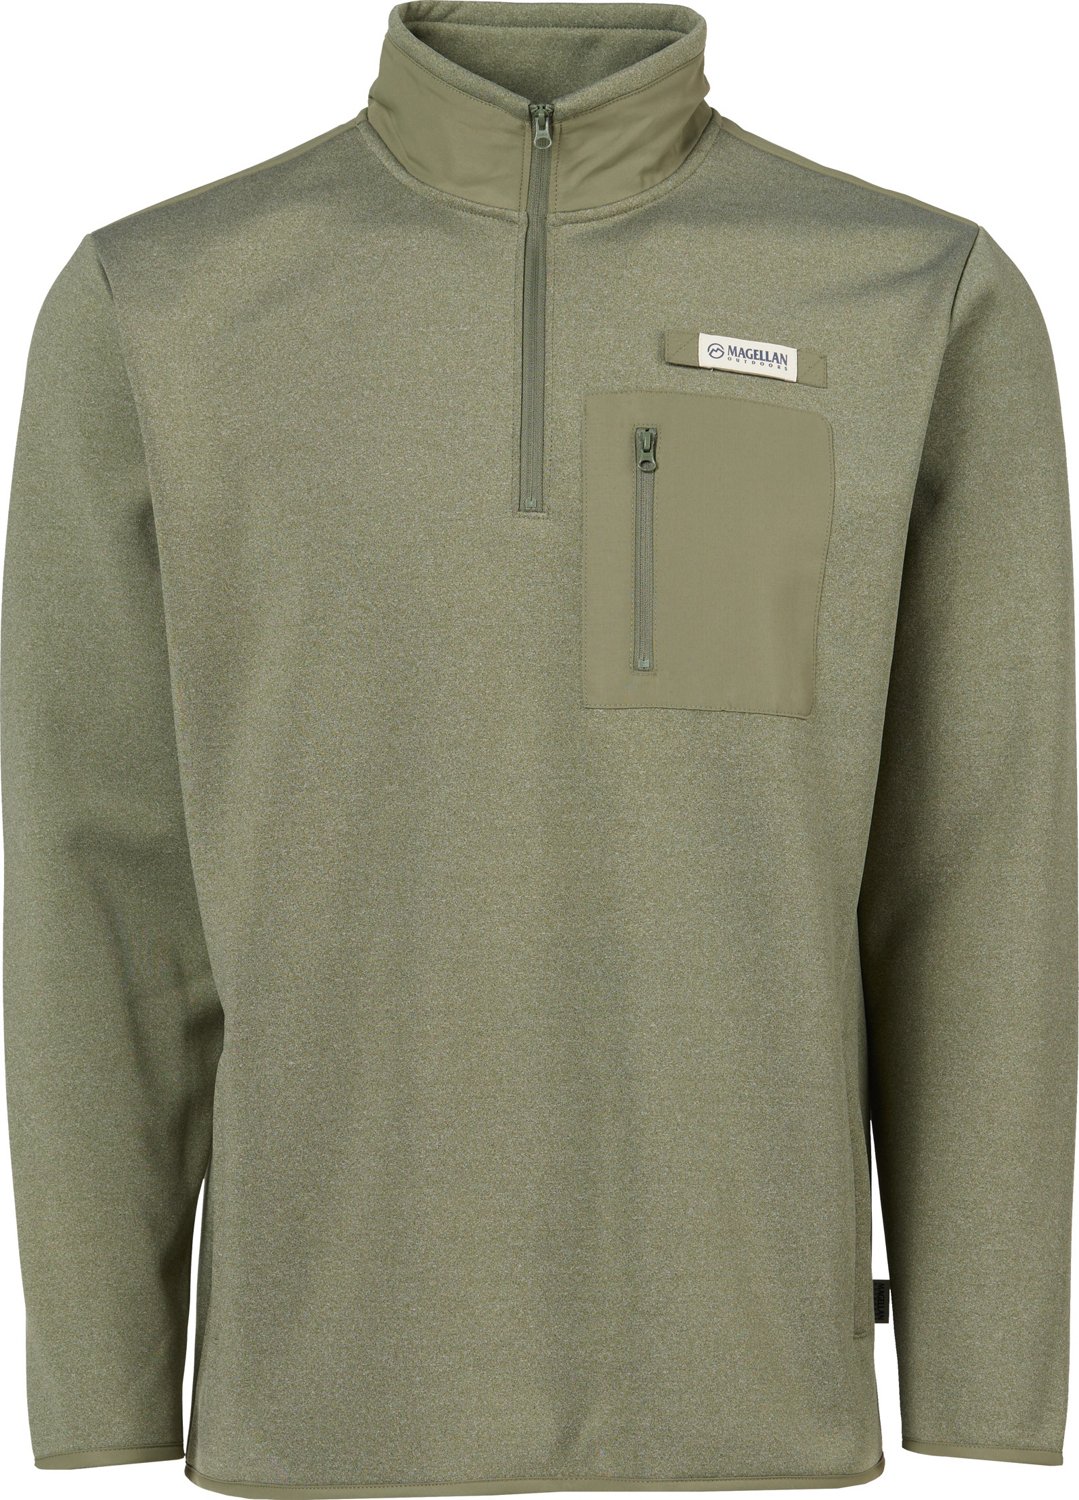 Magellan Outdoors Mens Overcast Fleece Long Sleeve 1/4 Zip Sweatshirt